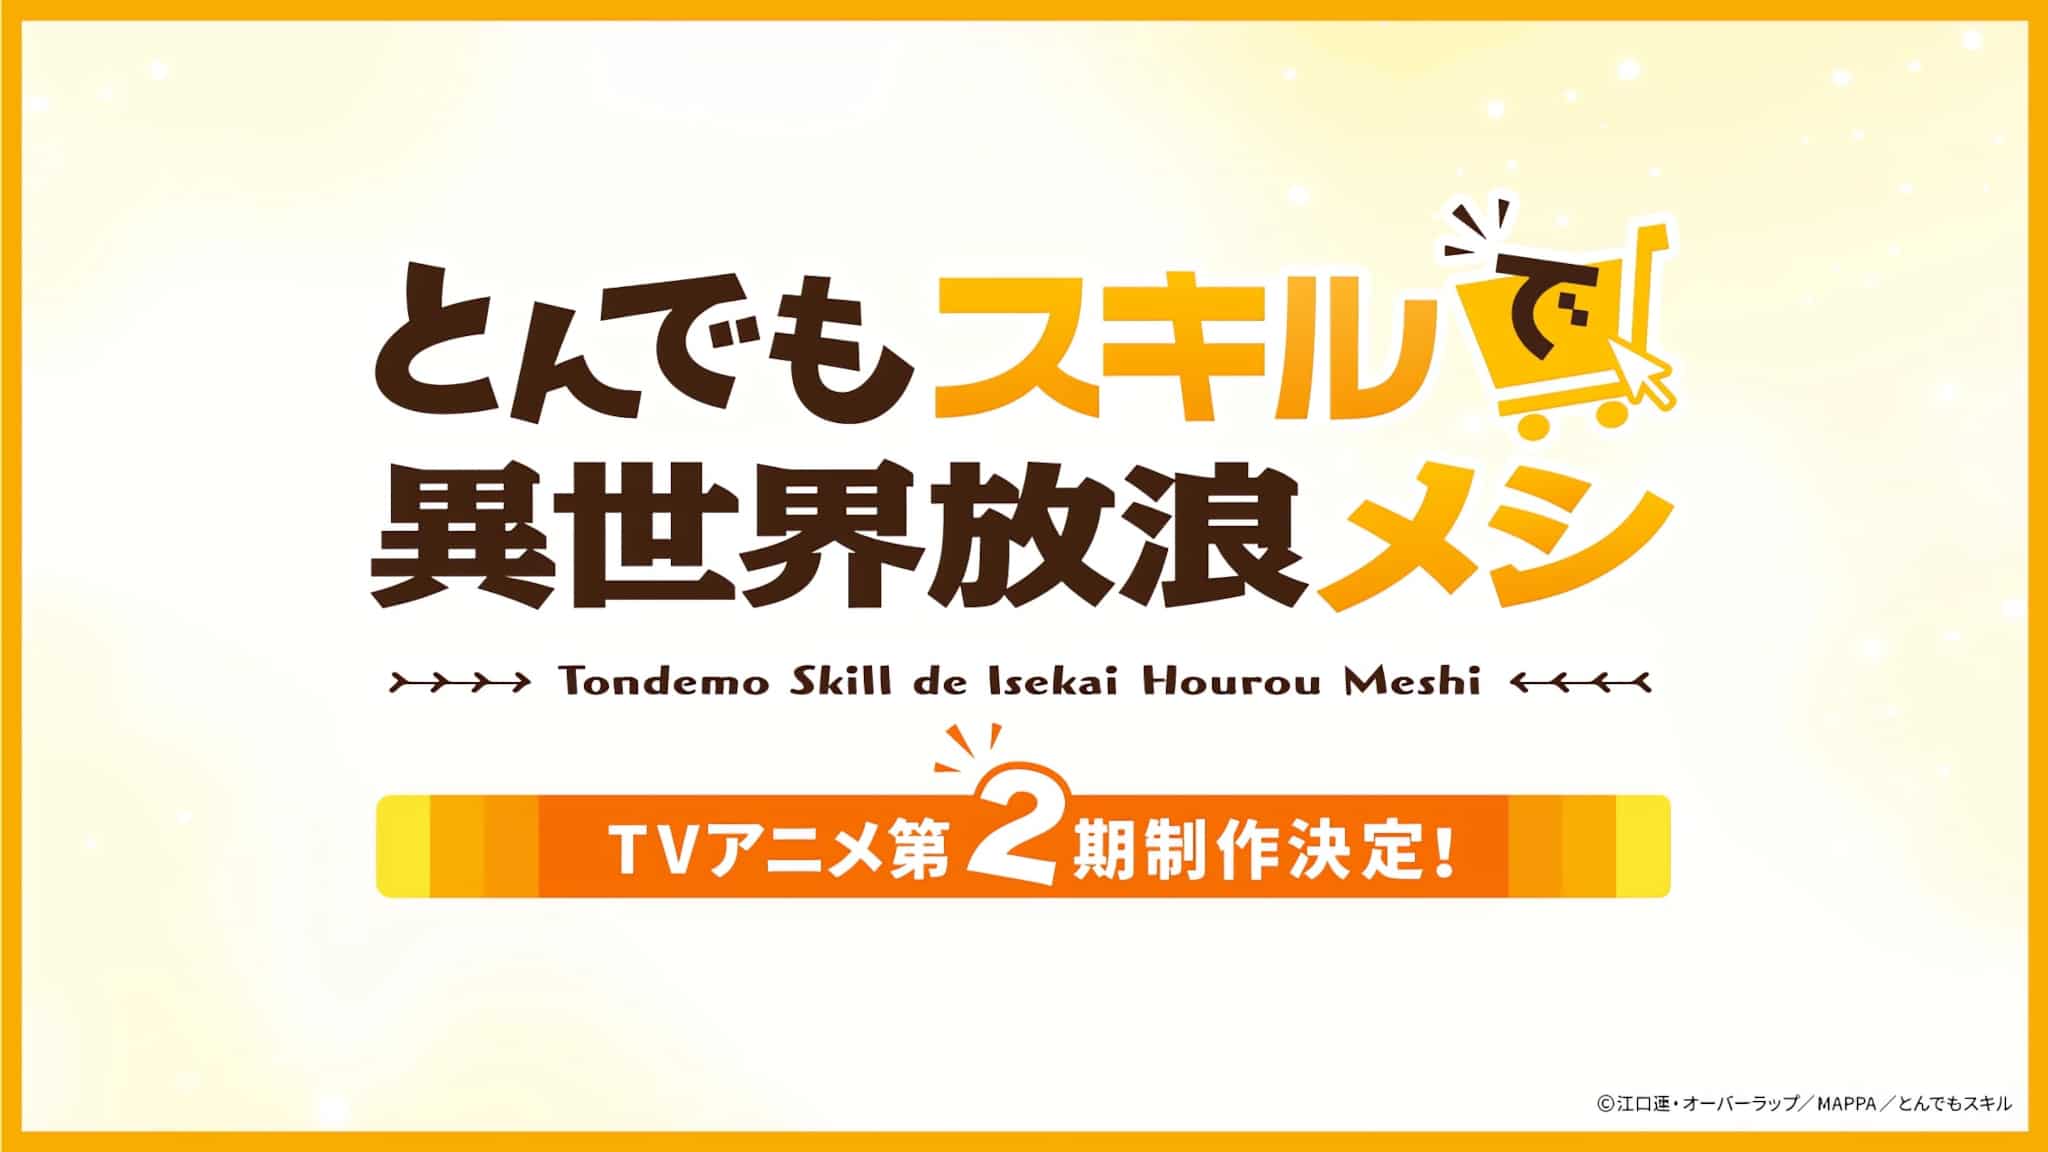 Annonce de la production dune saison 2 pour lanime Tondemo Skill de Isekai Hourou Meshi